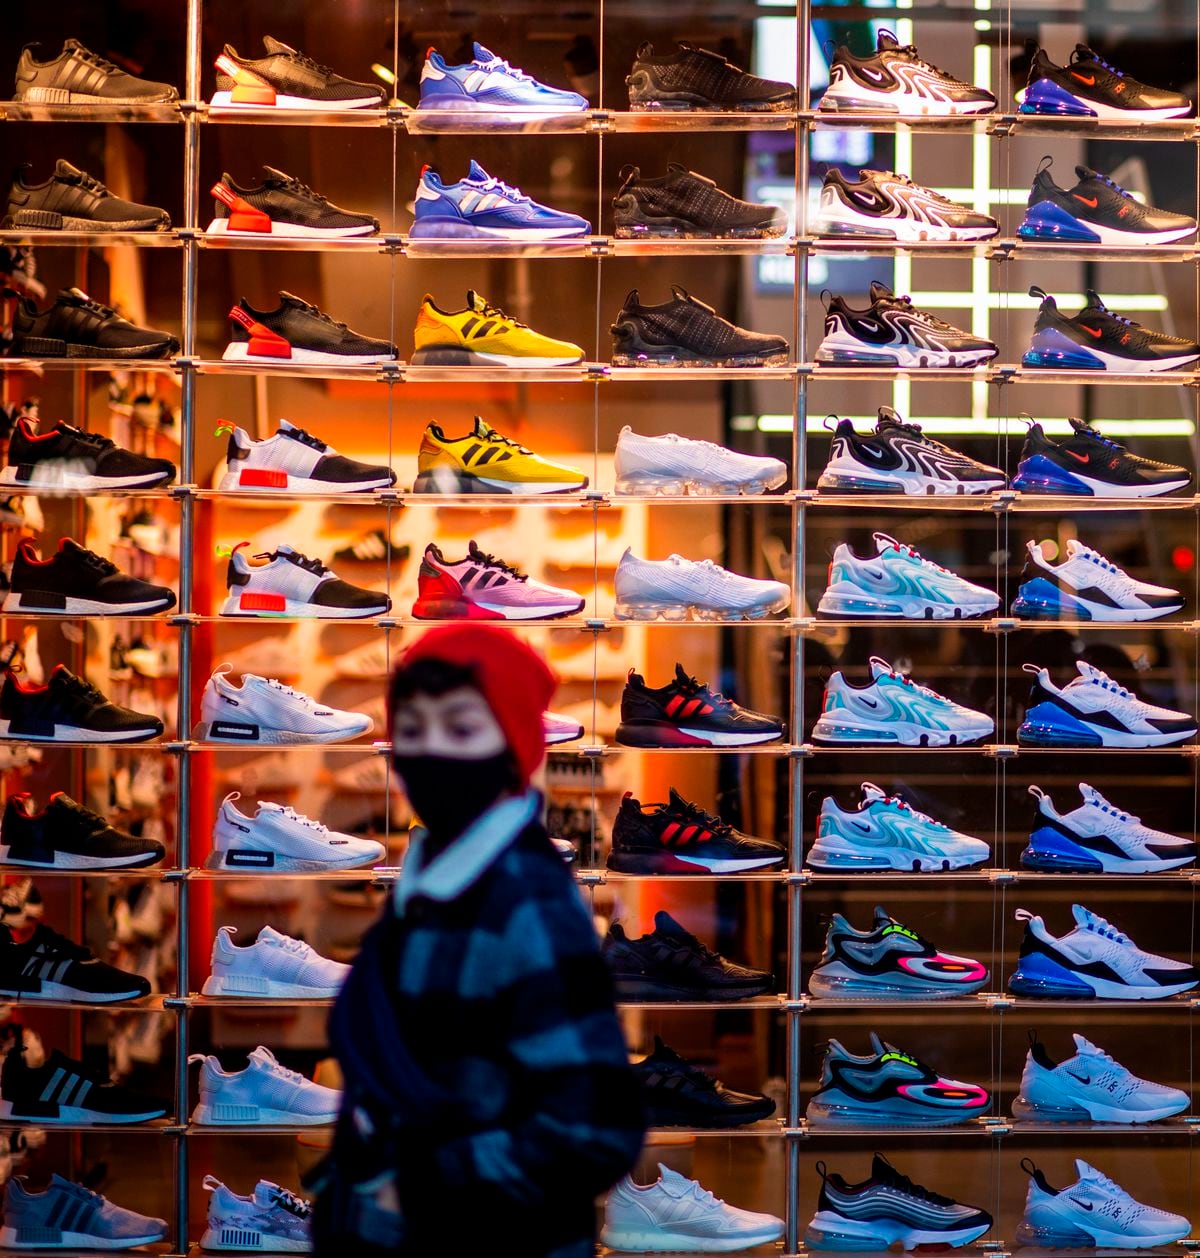 Glorioso progresivo parilla Sneakers': Las zapatillas se convierten en un activo de inversión para  muchos jóvenes | Negocios | EL PAÍS